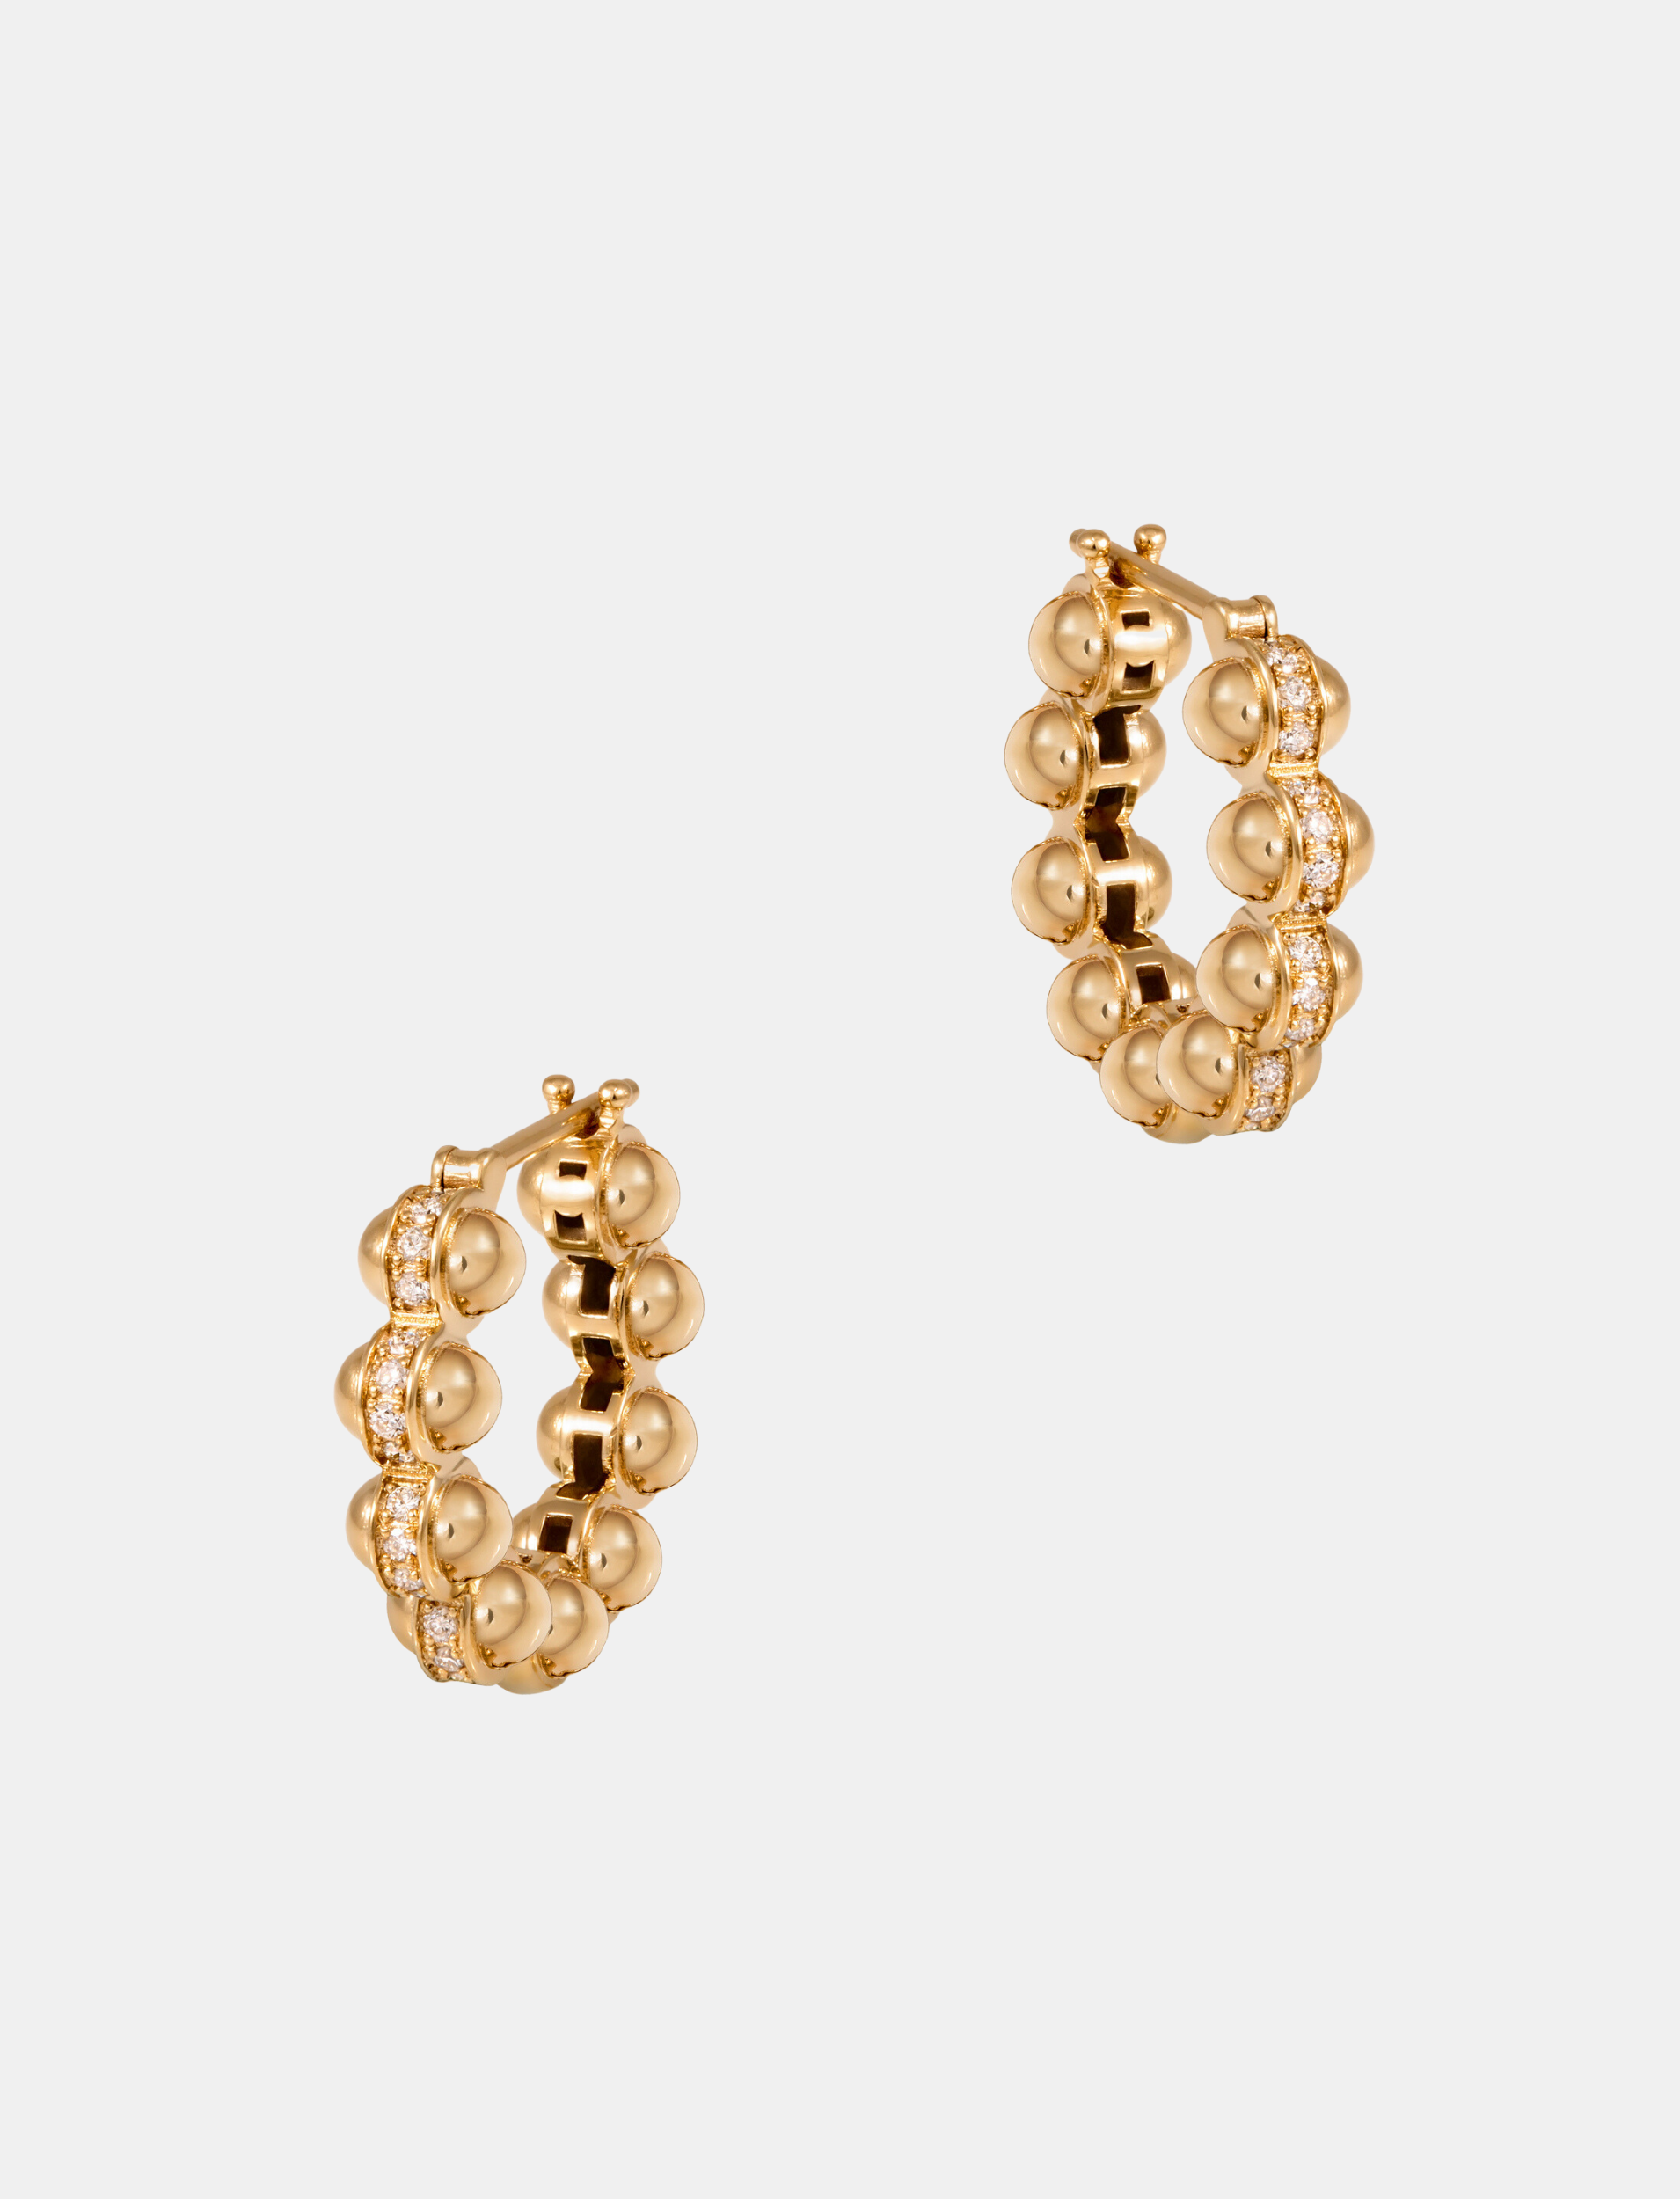 The Gold Atom Earrings